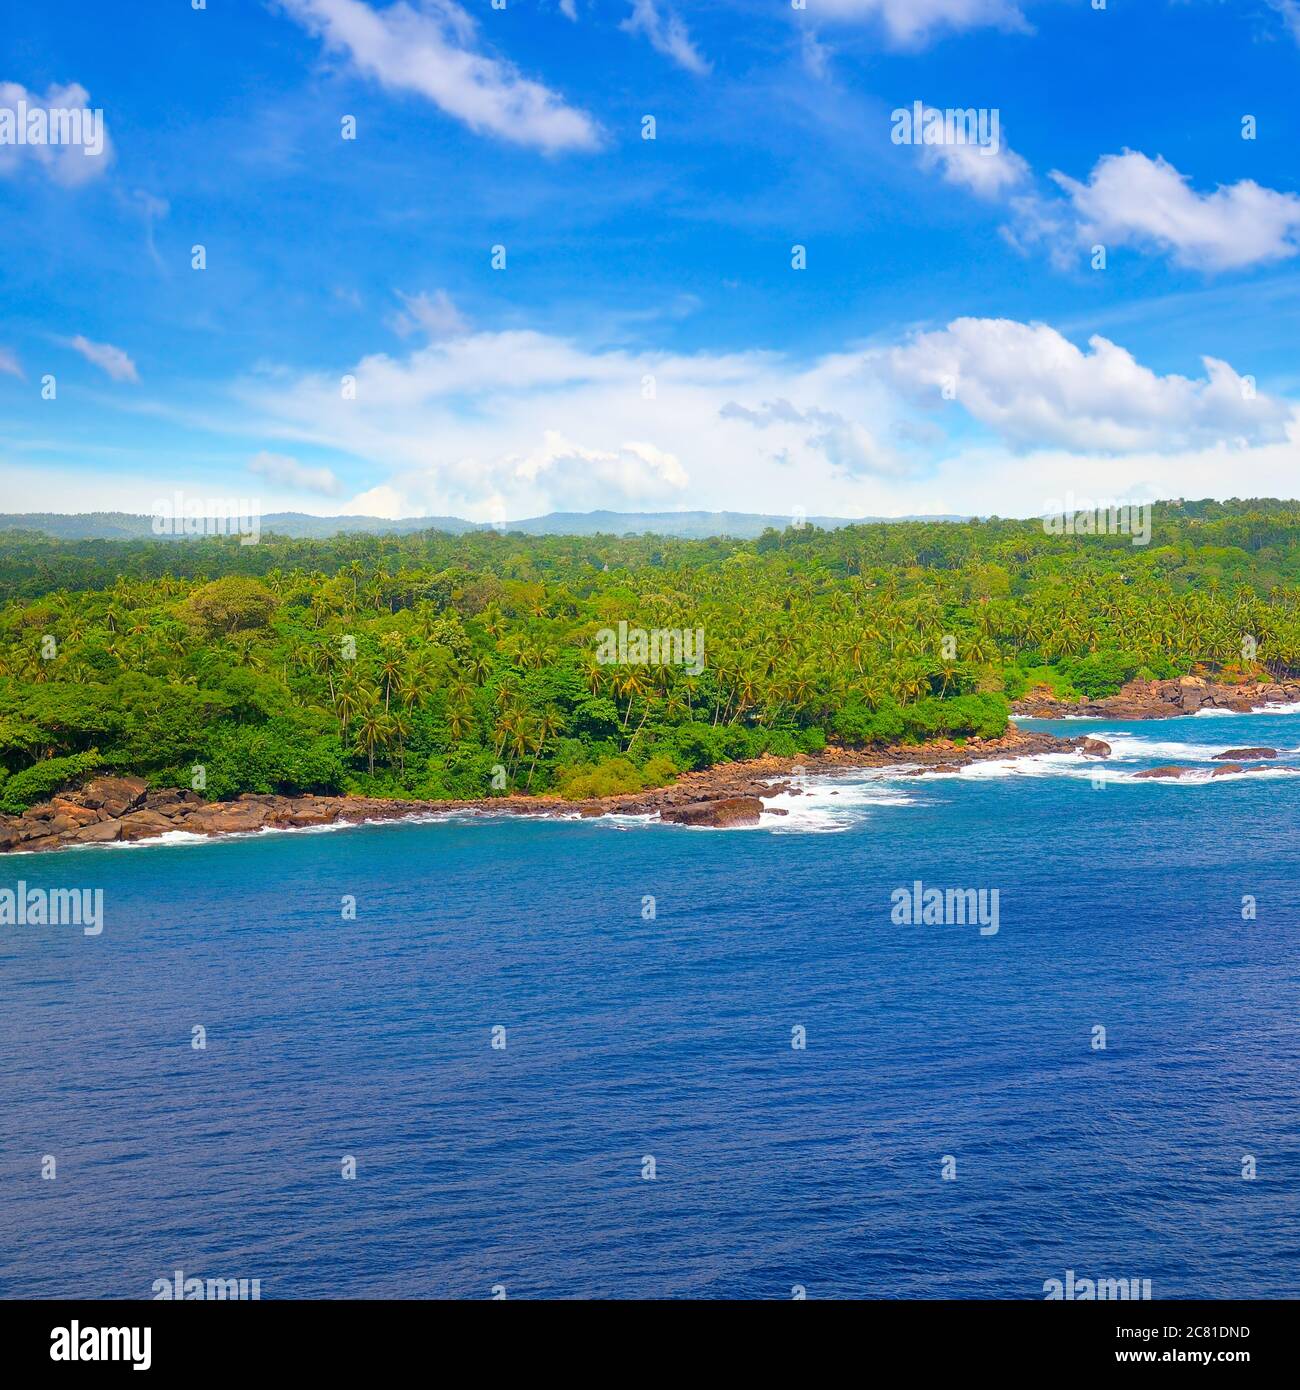 Spiaggia con splendida costa. L'acqua colorata è turchese, sabbia bianca e palme verdi. Foto Stock